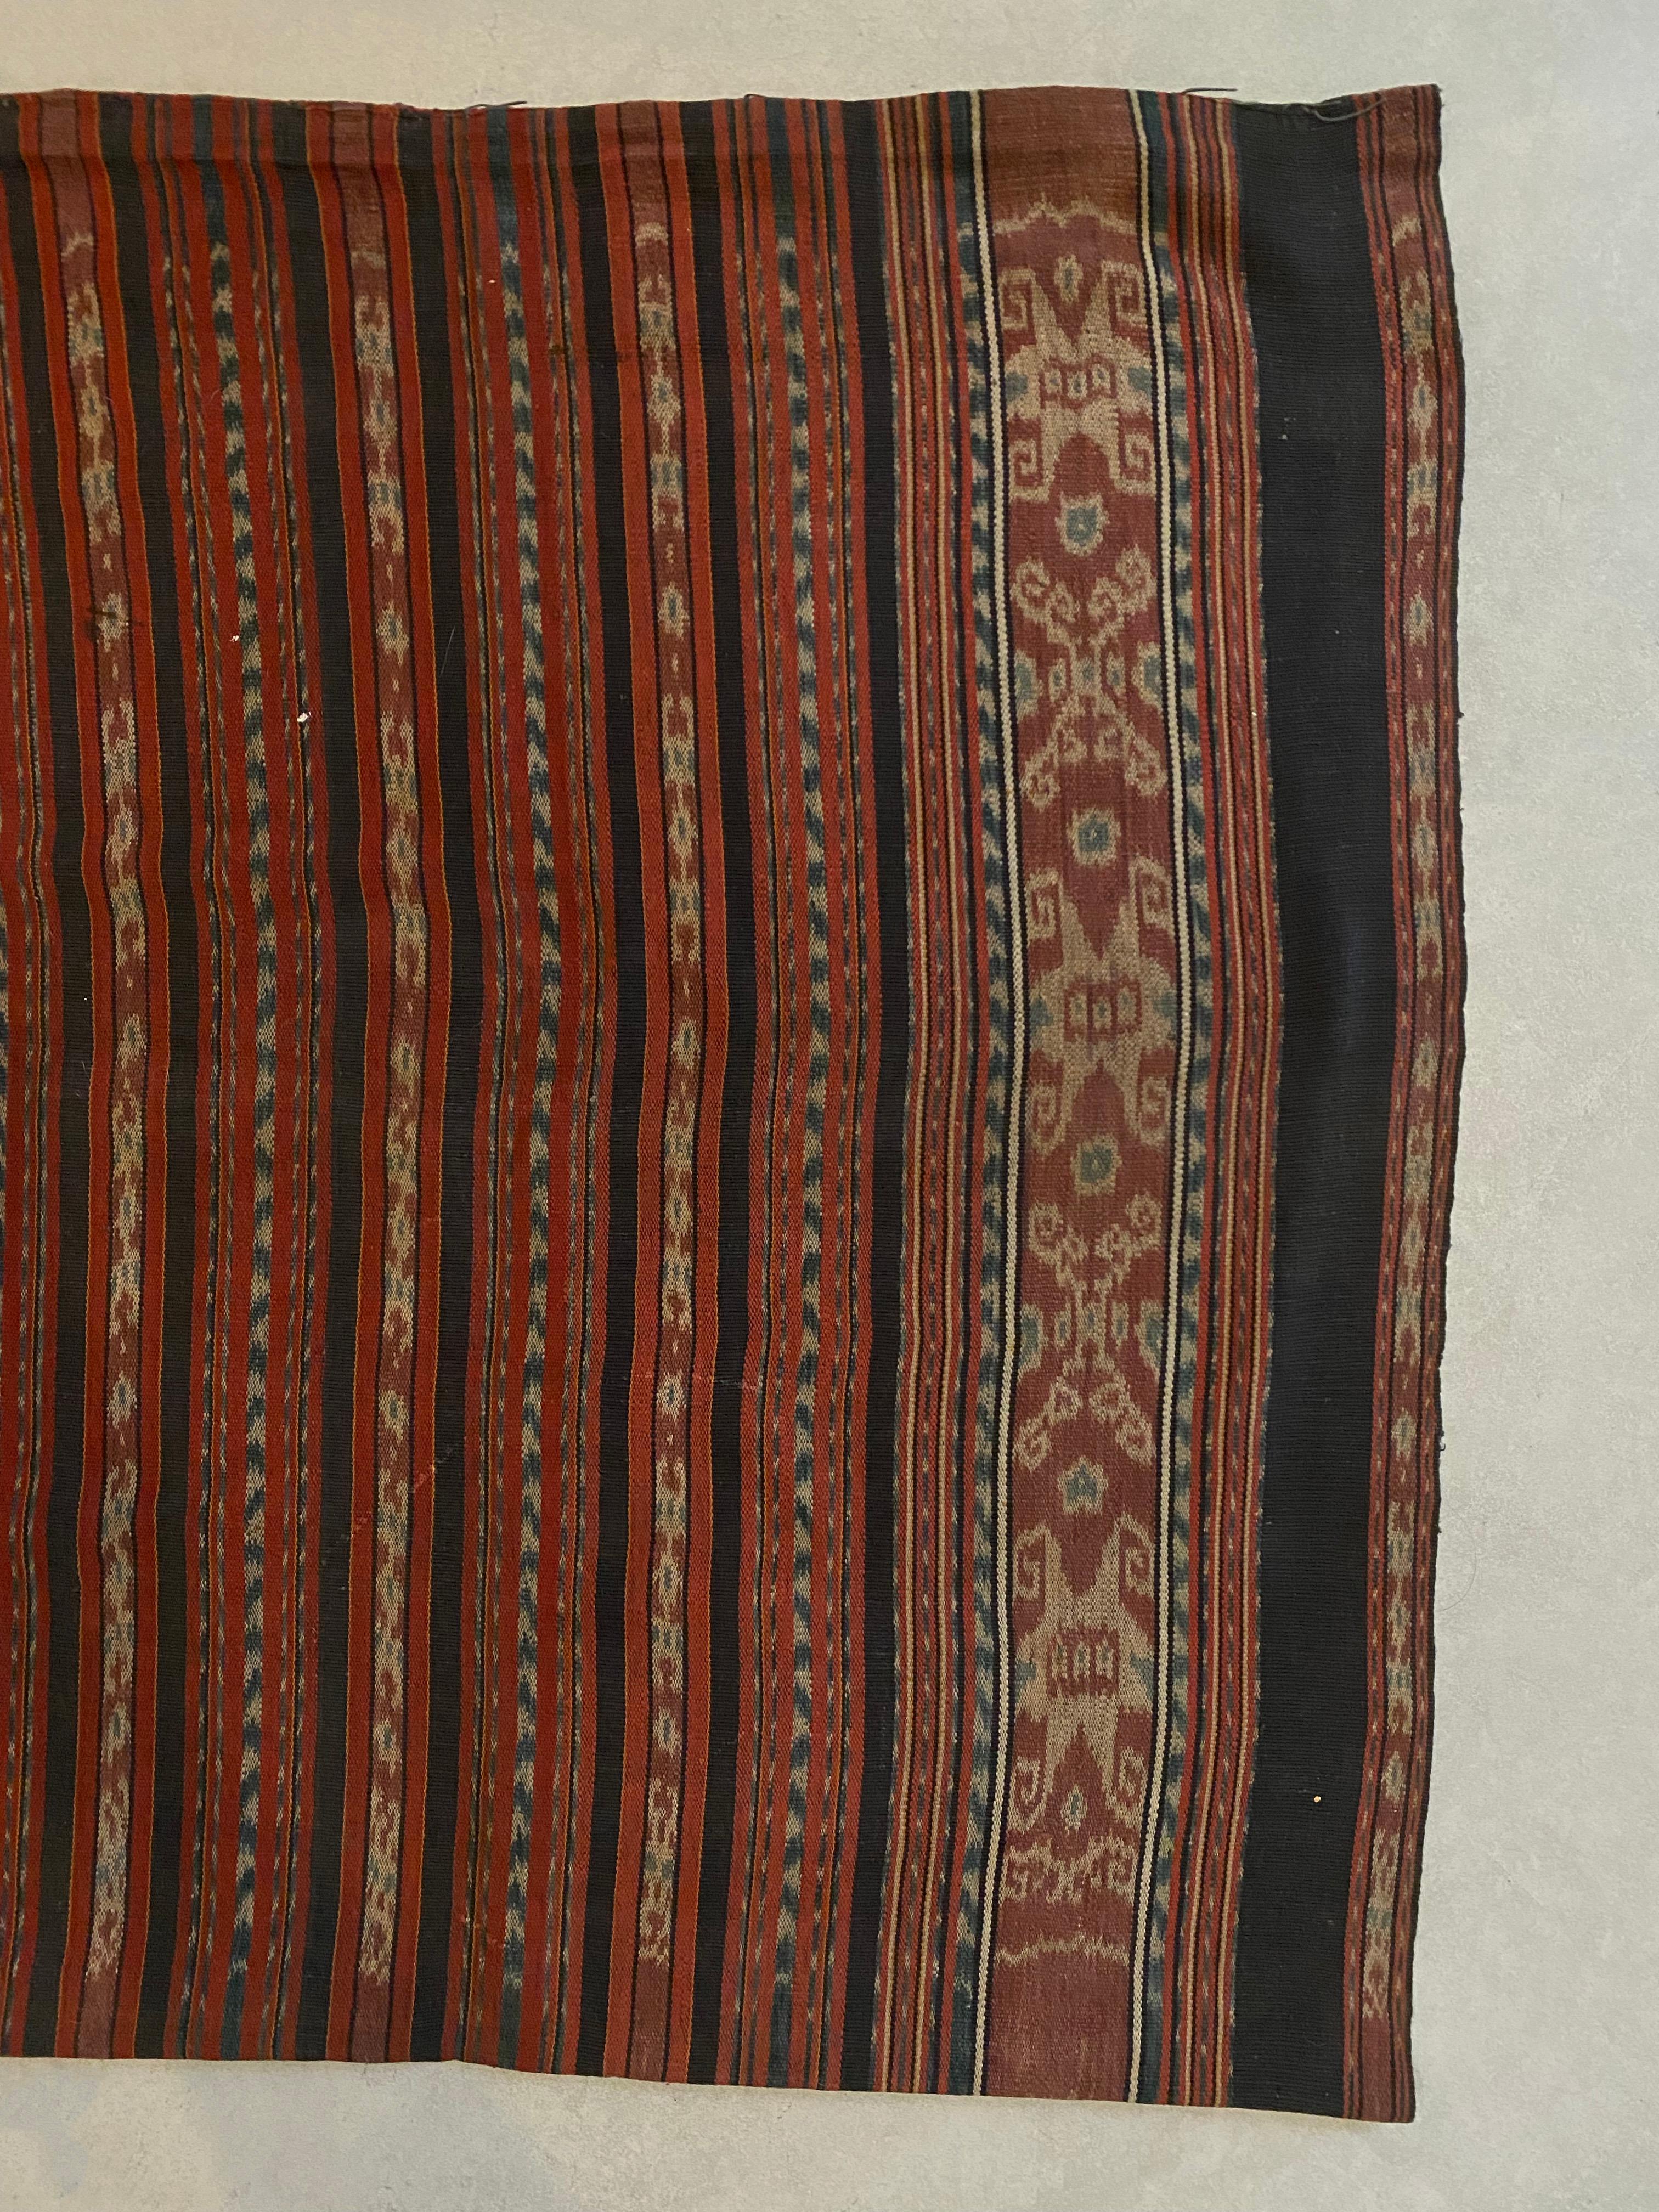 Ce textile Ikat est originaire de l'île de Flores, en Indonésie. Il est tissé à la main à l'aide de fils teints naturellement, selon une méthode transmise de génération en génération. Ce textile est tubulaire pour être porté comme une jupe à la